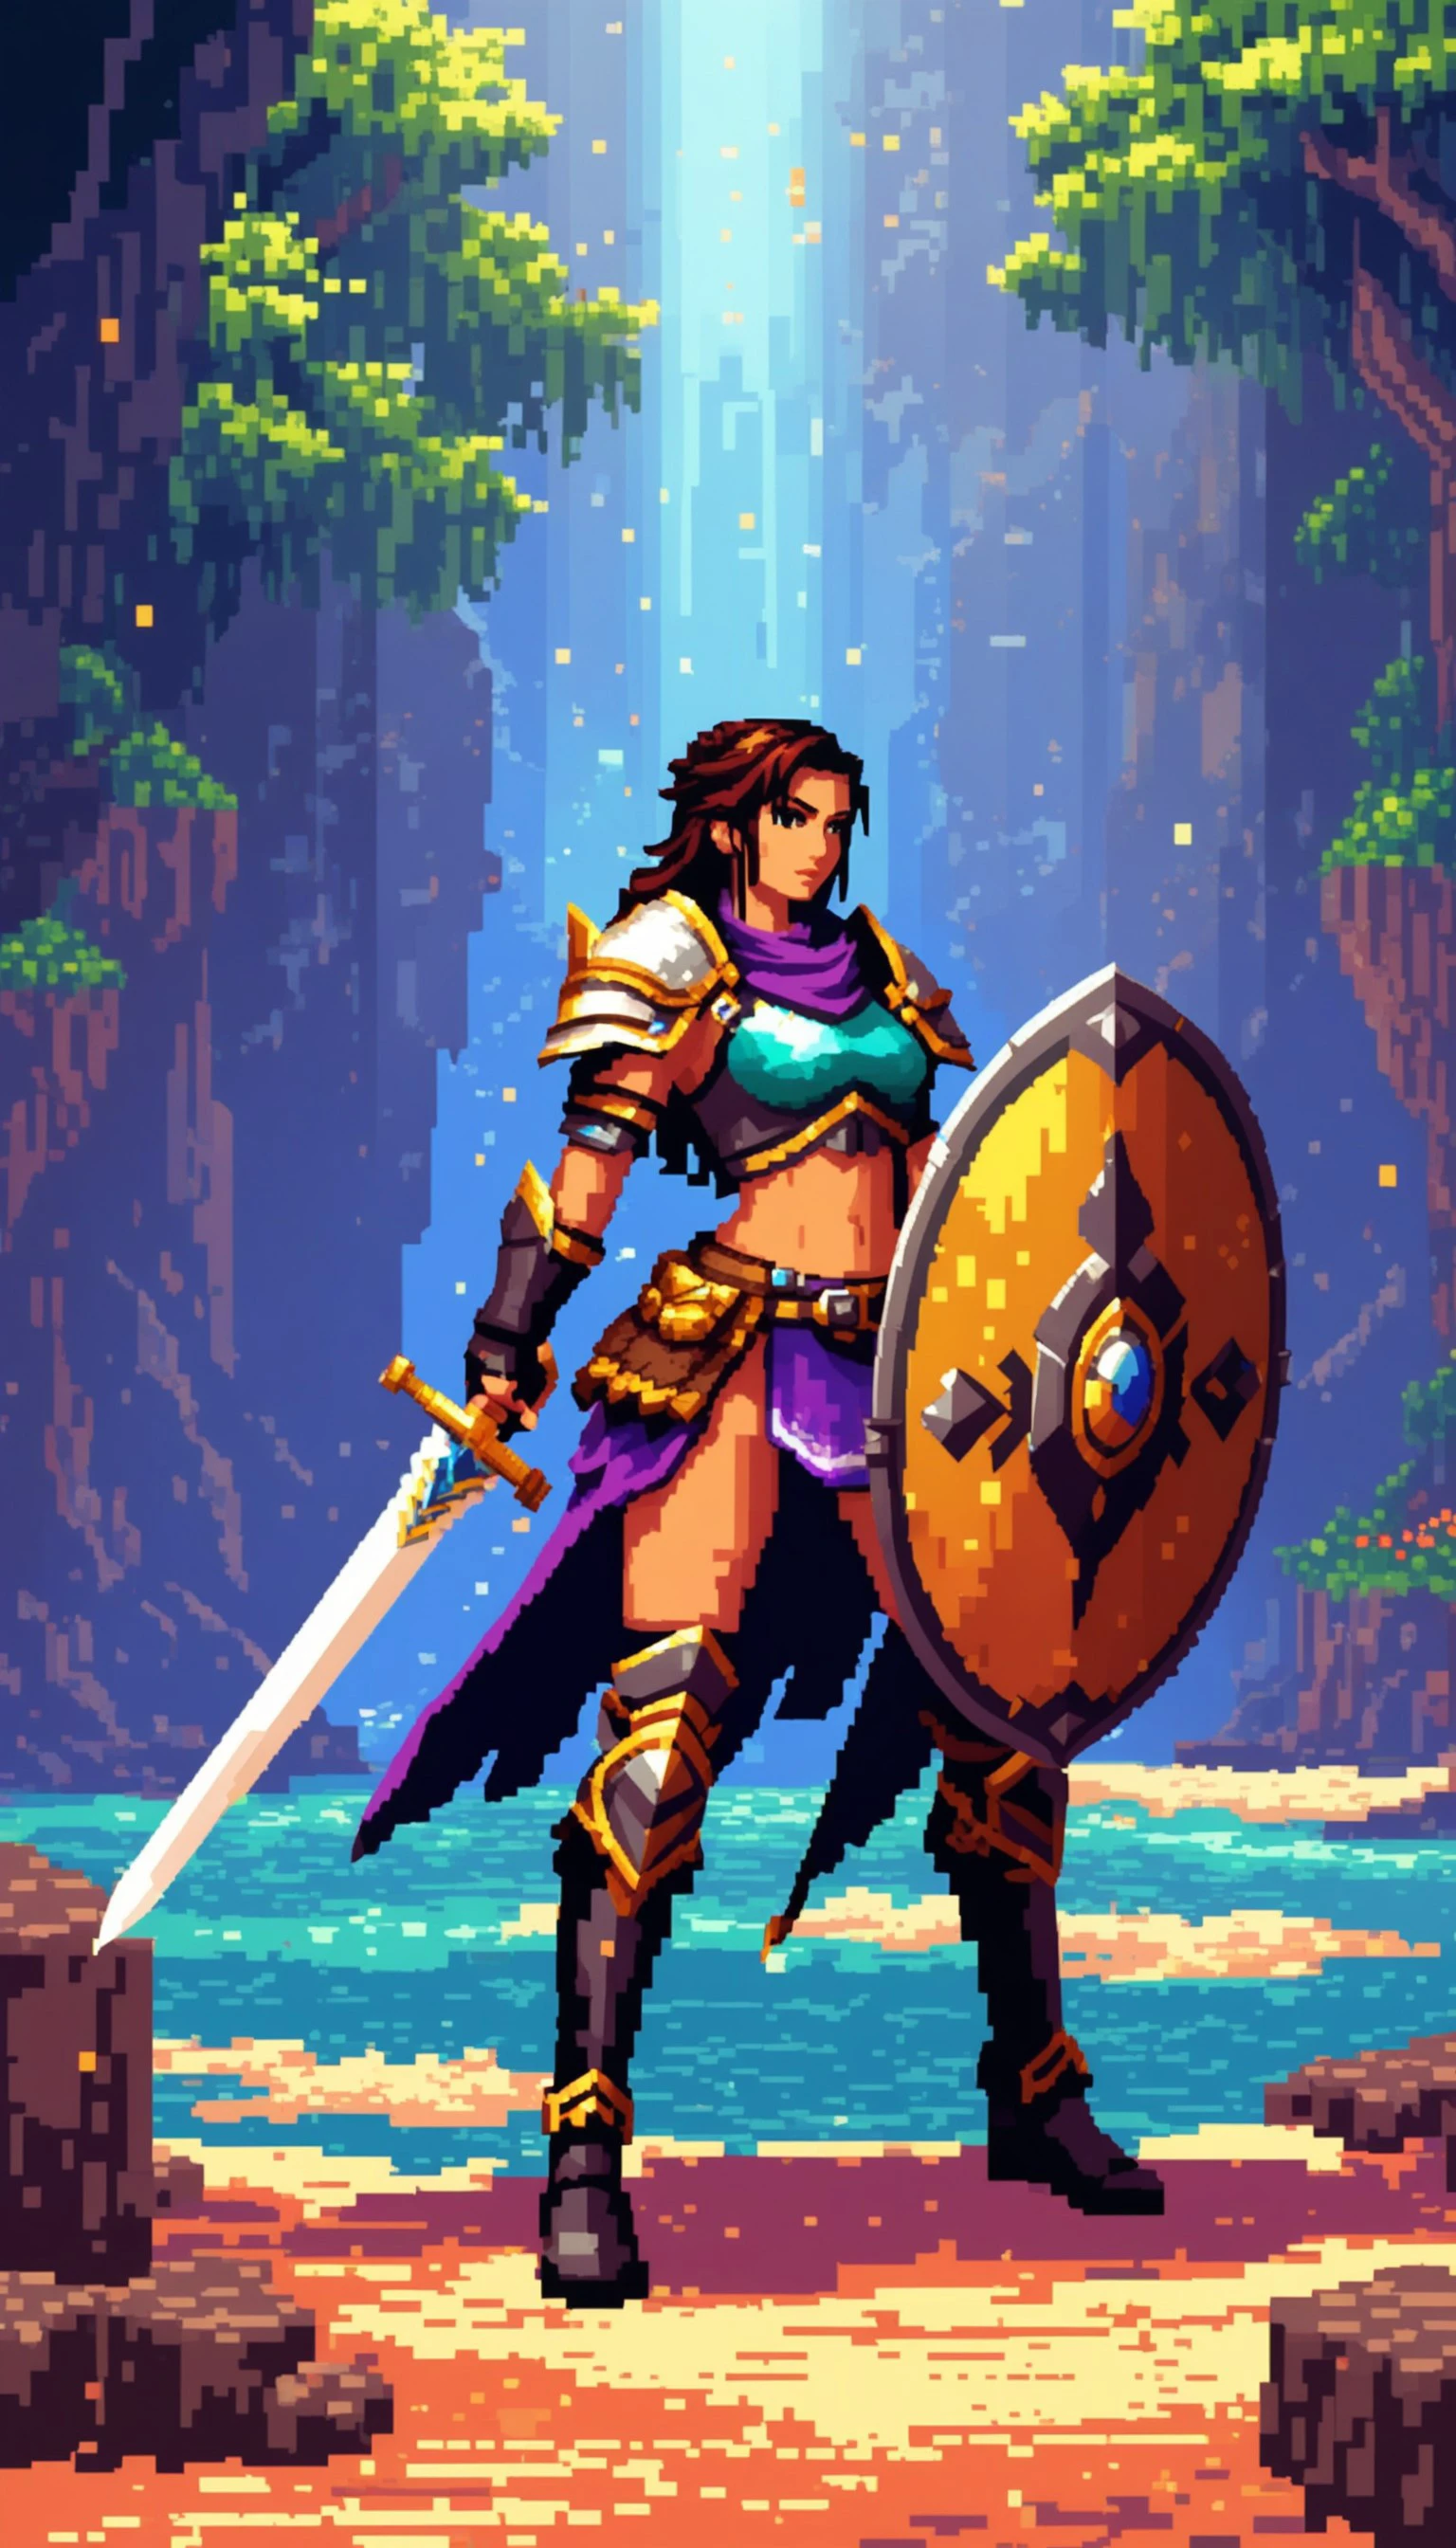 ファンタジーの世界を舞台に剣と盾を持った勇敢な女性戦士のピクセルアート, 鮮やかな色彩が特徴, ダイナミックライティング, そして劇的な, 壮大なムード